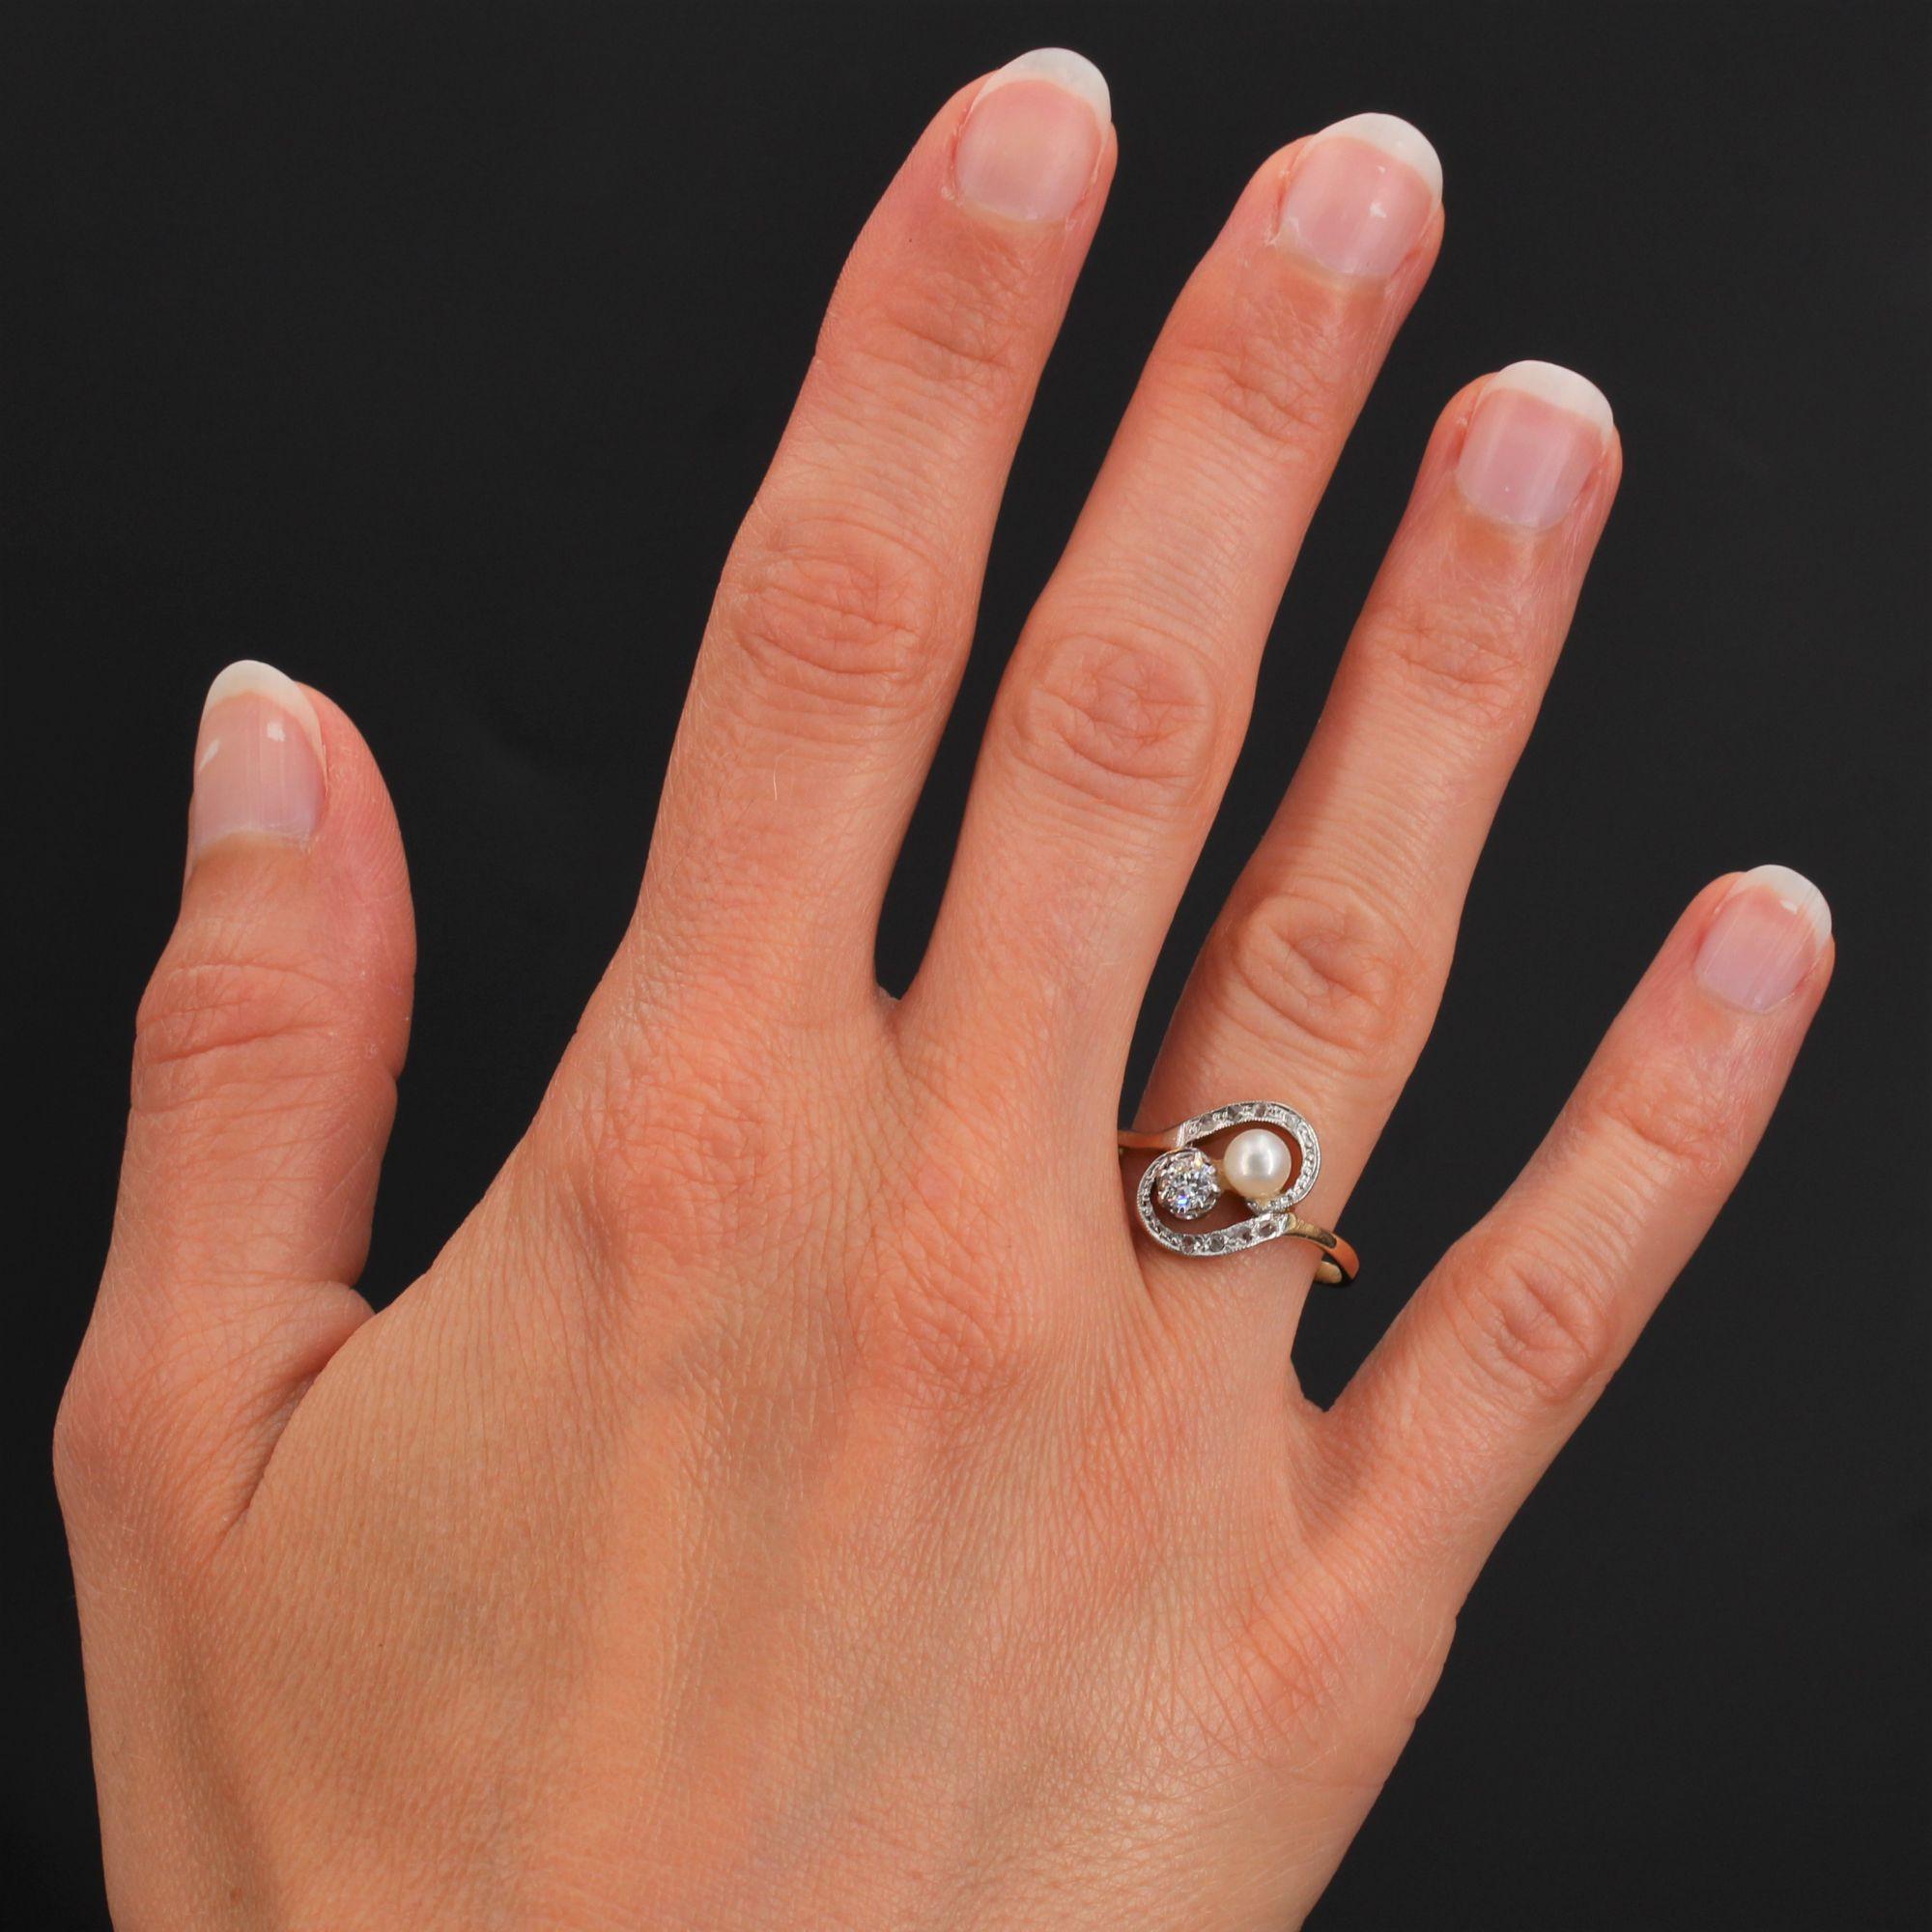 Ring aus 18 Karat Gelbgold.
Schöner antiker Ring, der auf der Oberseite mit einer natürlichen Perle und einem Diamanten im Brillantschliff verziert ist und auf beiden Seiten mit Diamanten im Rosenschliff besetzt ist.
Gewicht der Diamanten: ca. 0,20